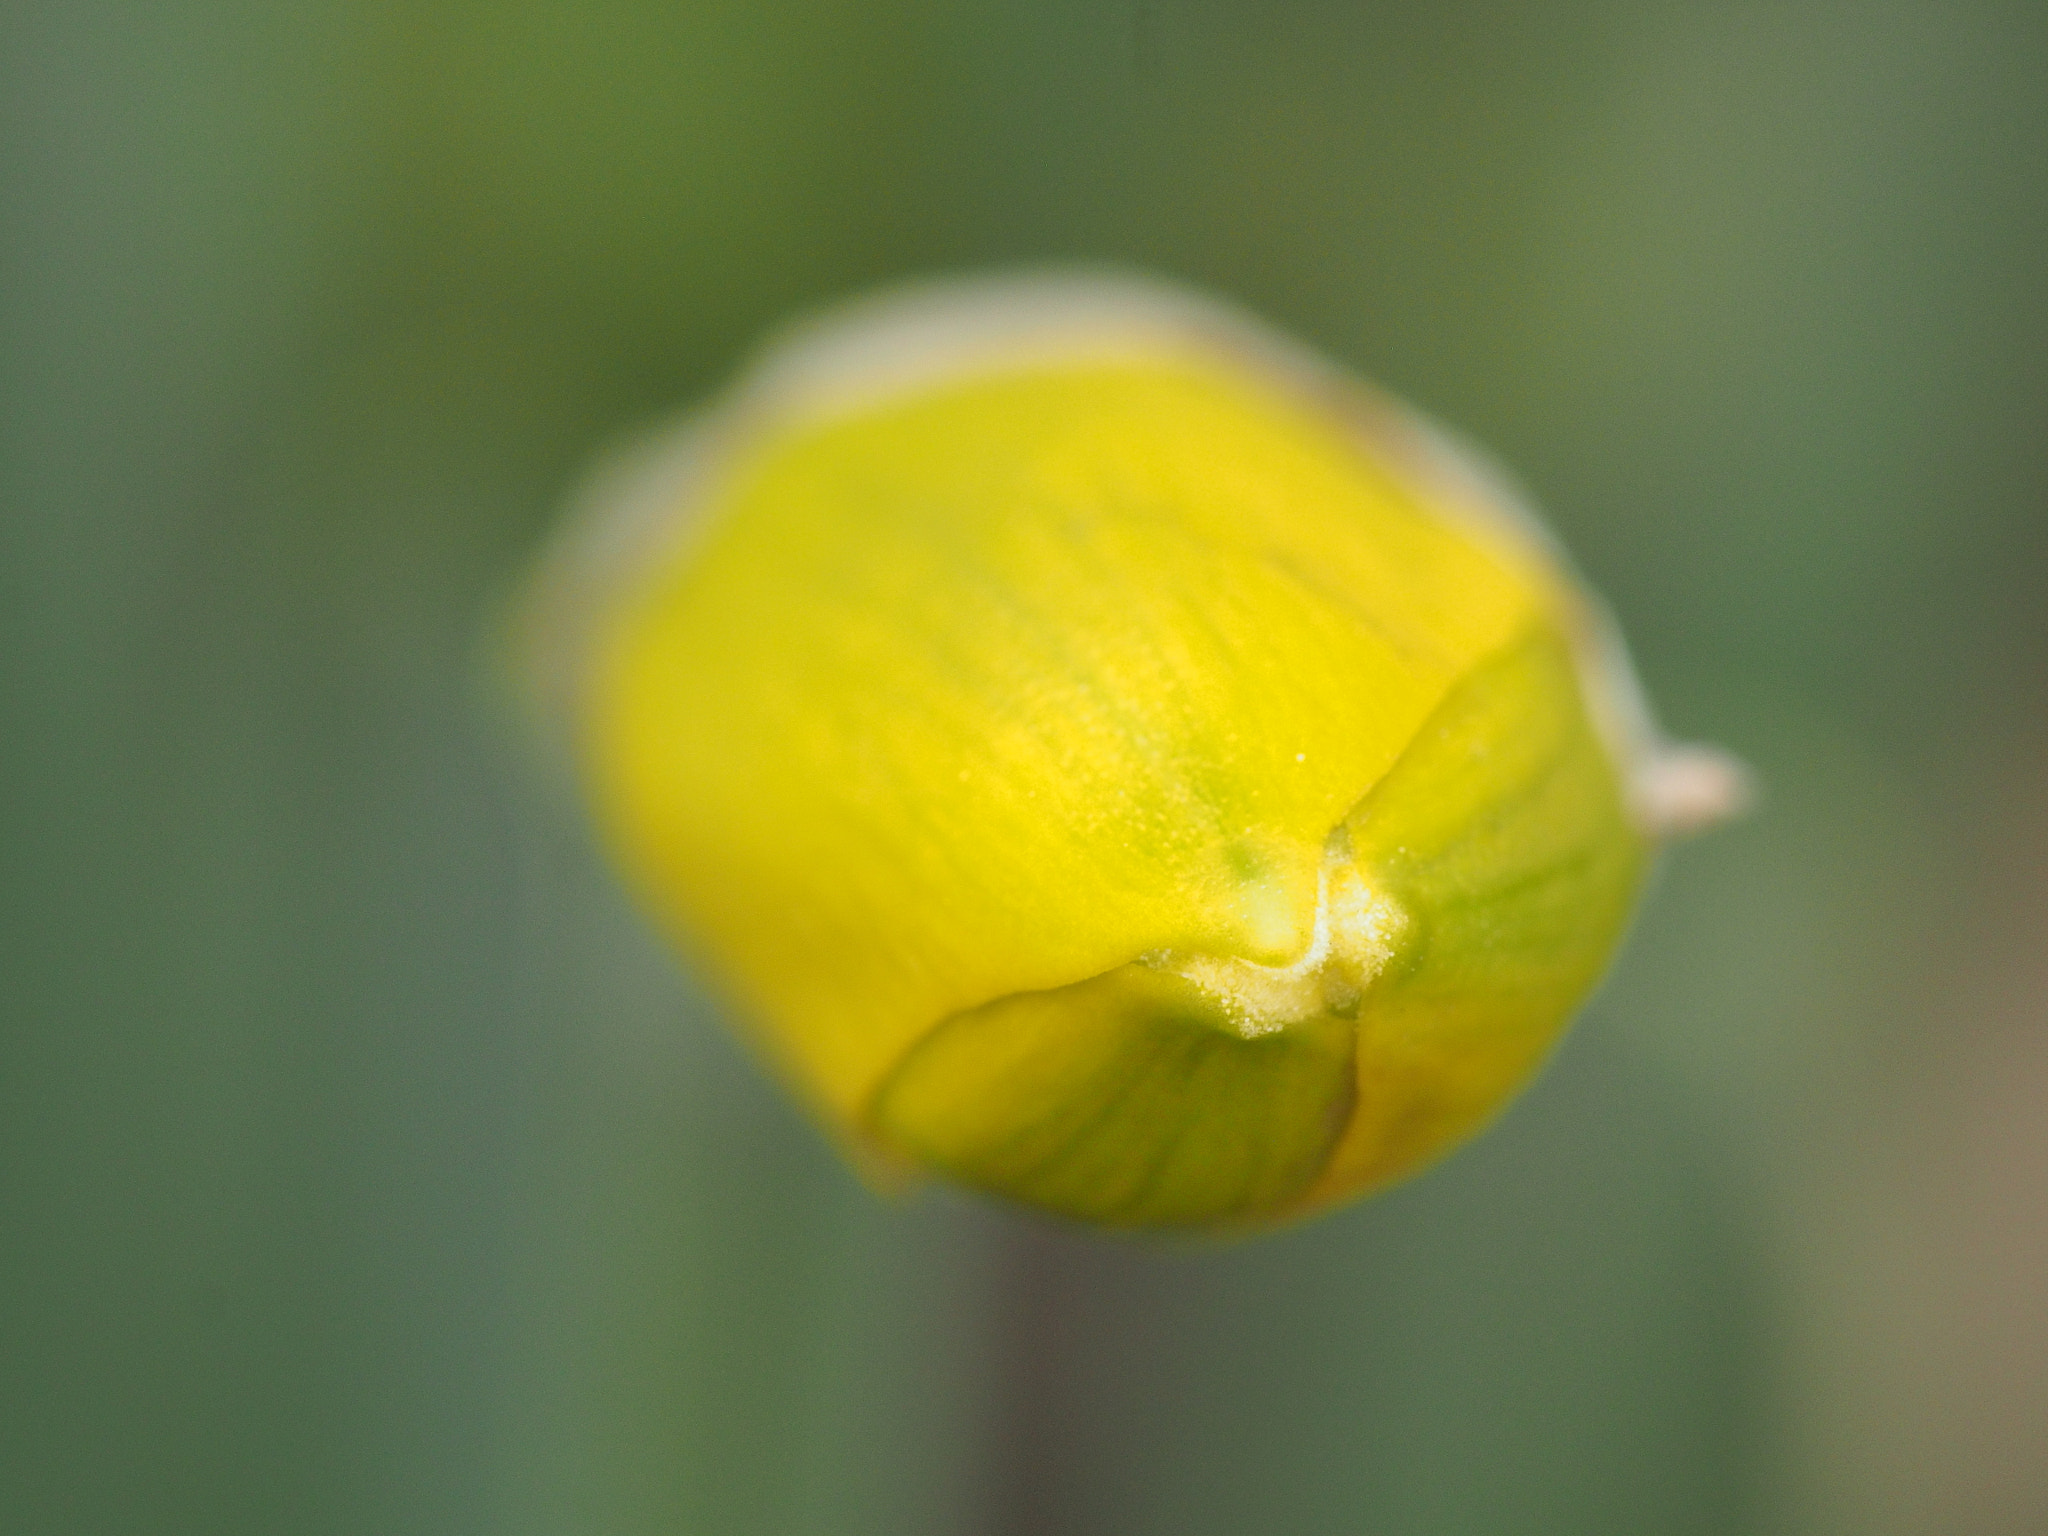 Trumpet daffodil bud tip